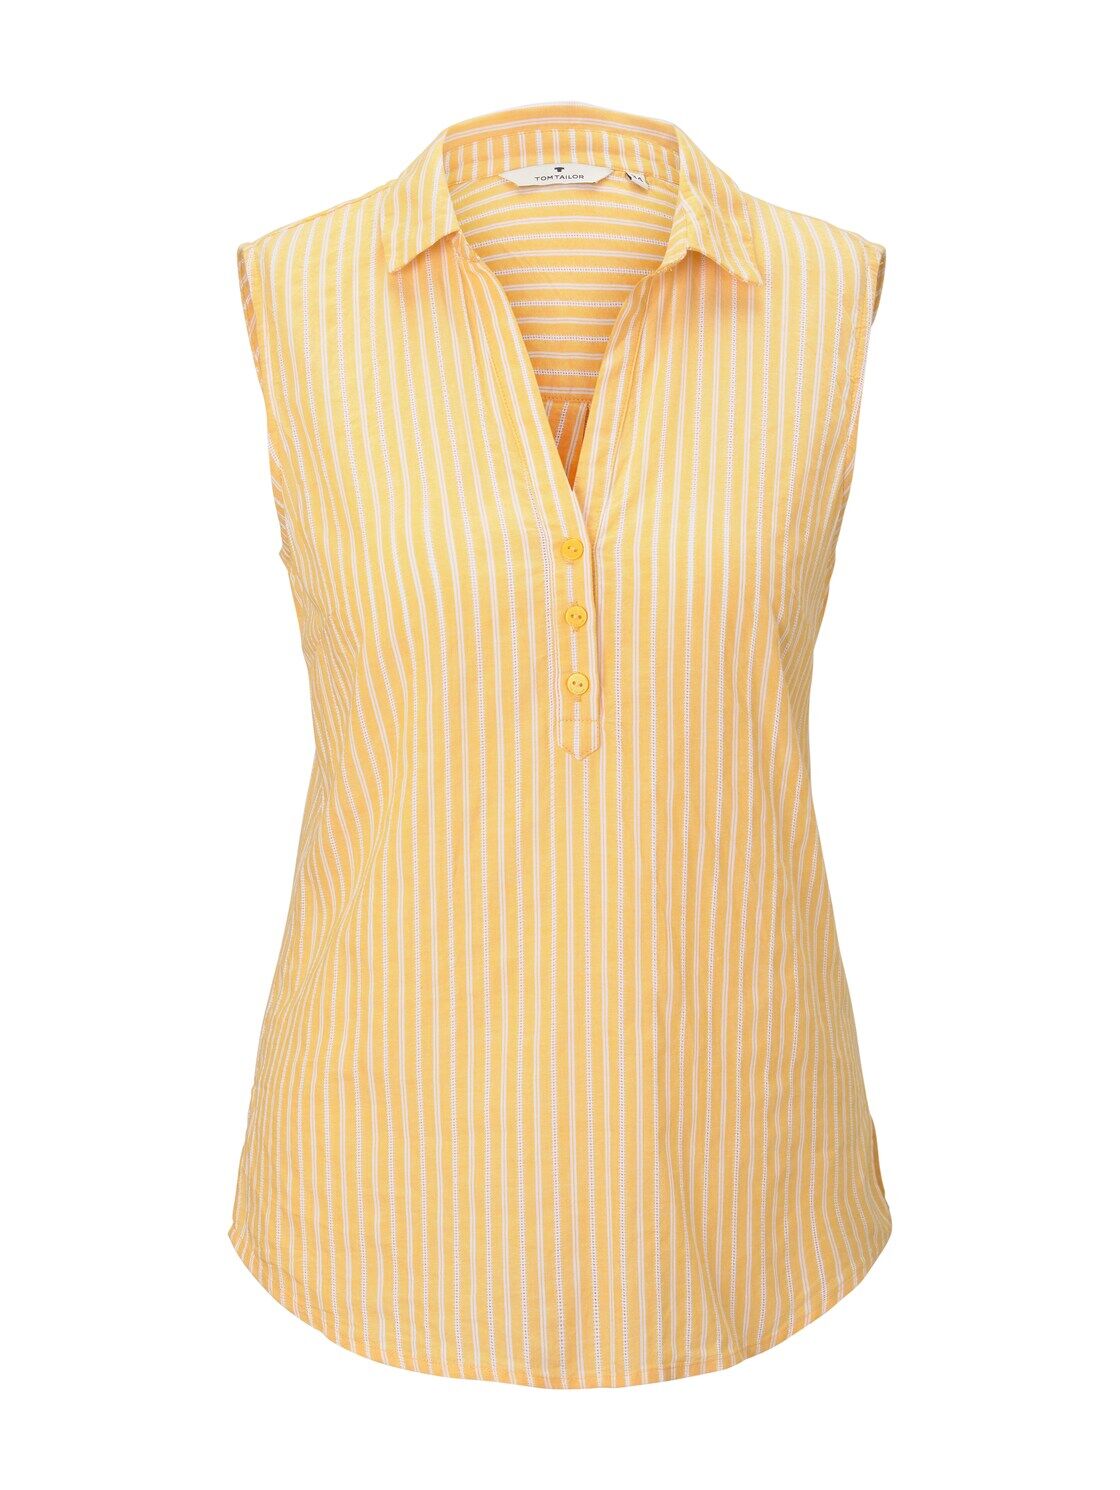 TOM TAILOR Damen Ärmellose Hemdbluse mit Streifenmusterung, gelb, Gr.40